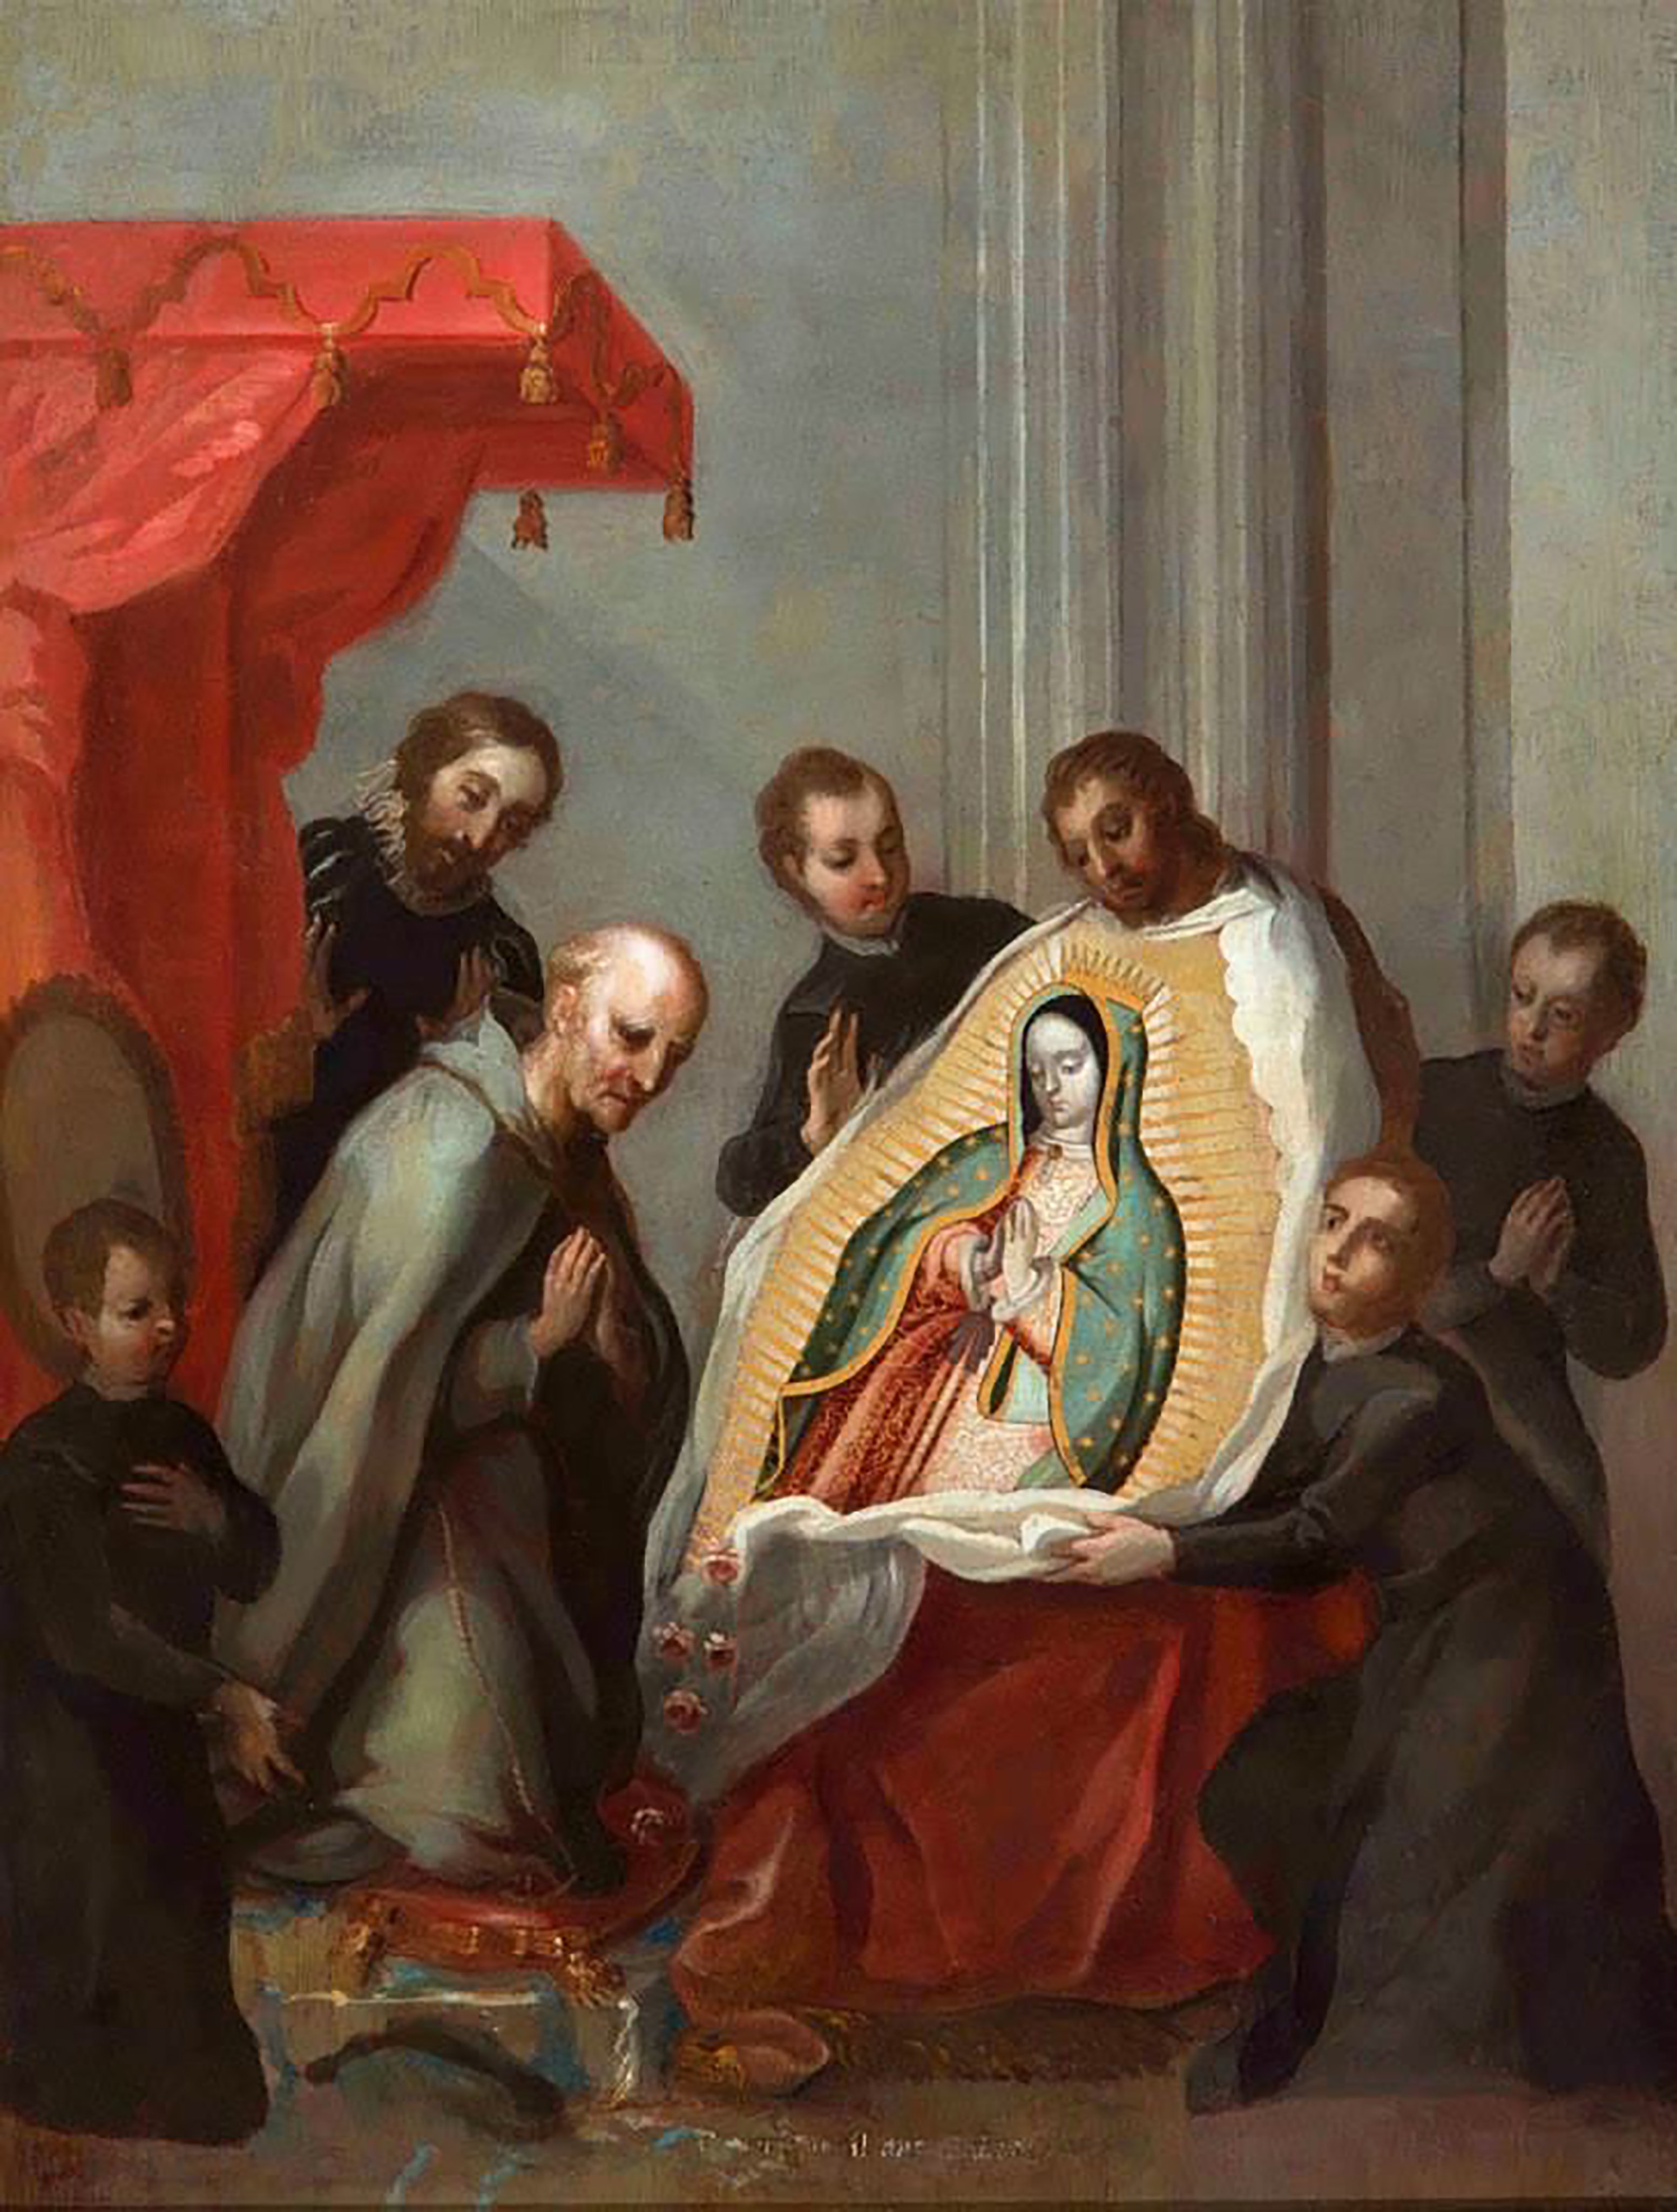 Nossa Senhora de Guadalupe